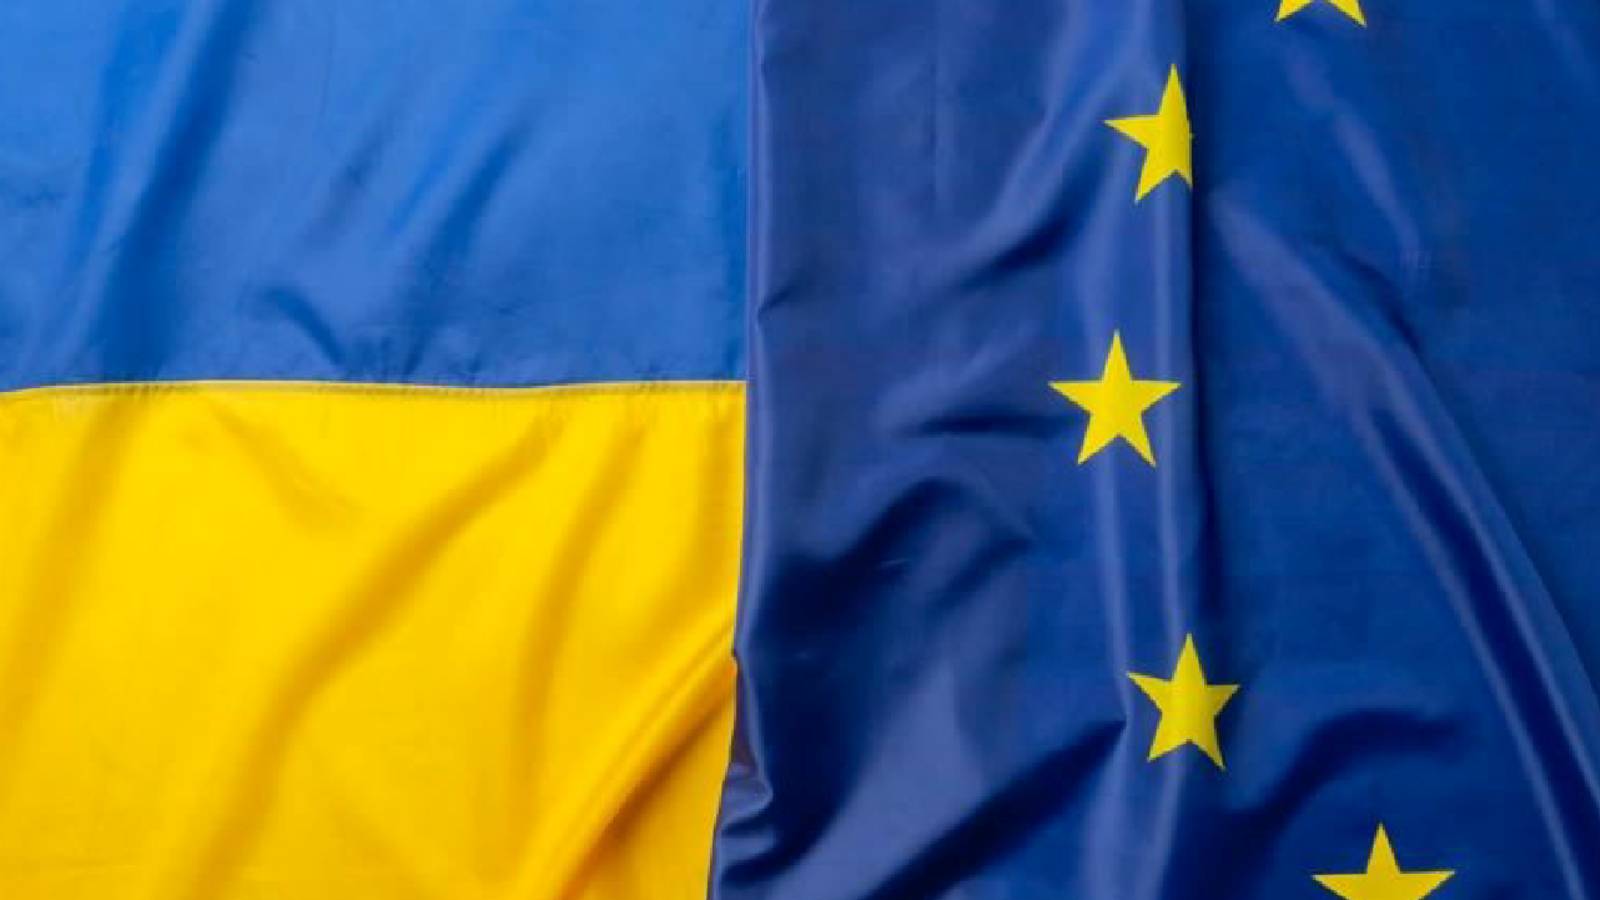 Comisia Europeana Confirma un Nou Ajutor Financiar Mare pentru Ucraina